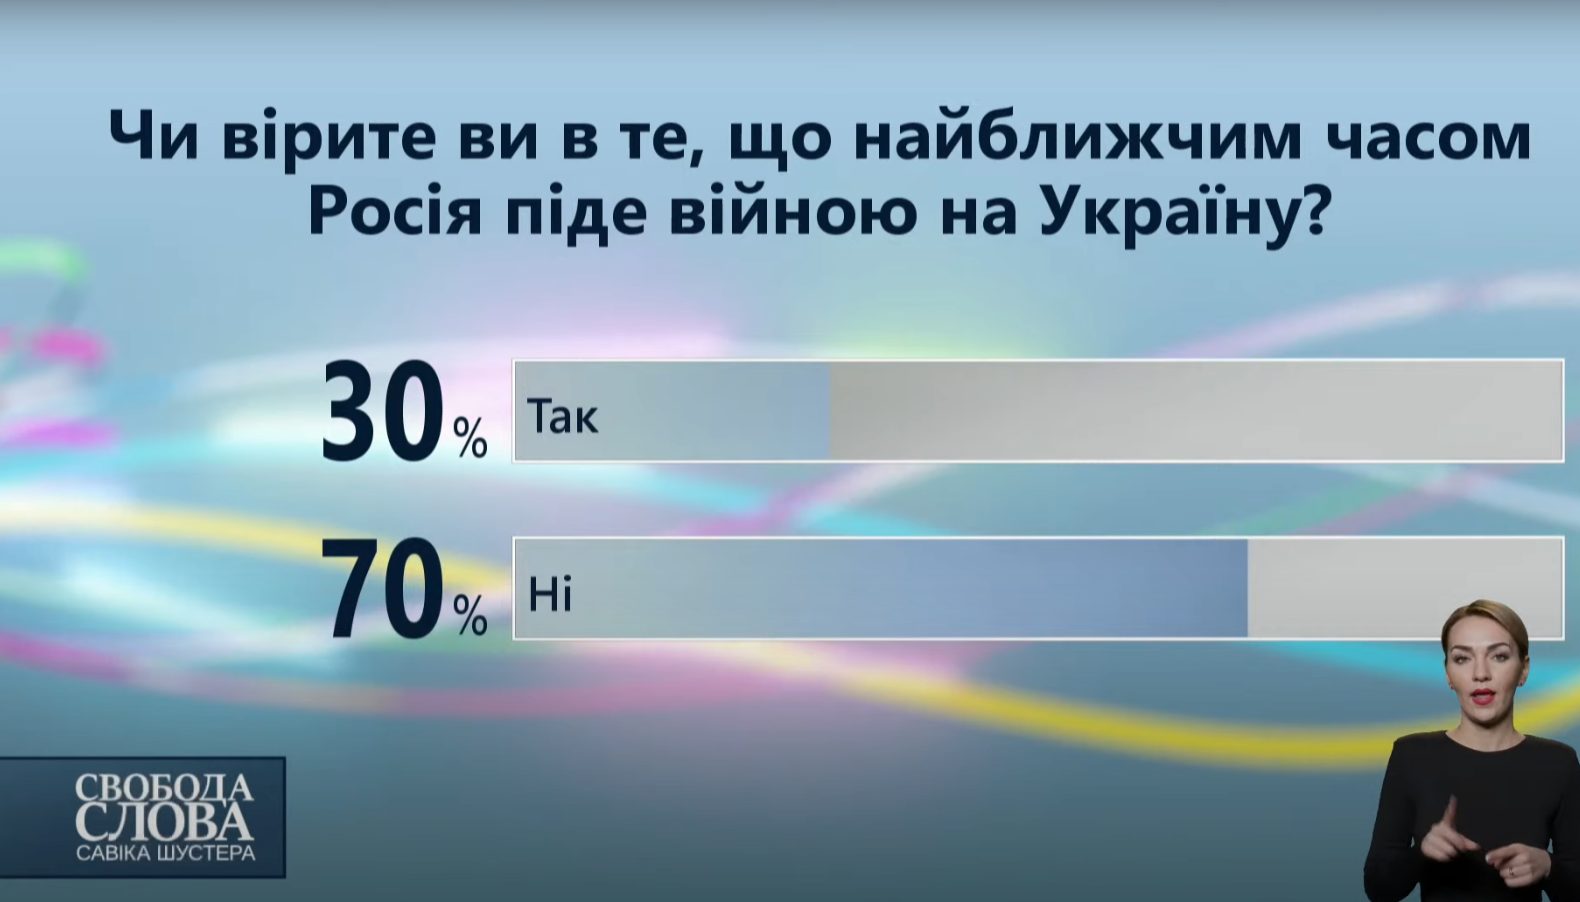 Результати опитування серед глядачів у студії про можливе вторгнення Росії.